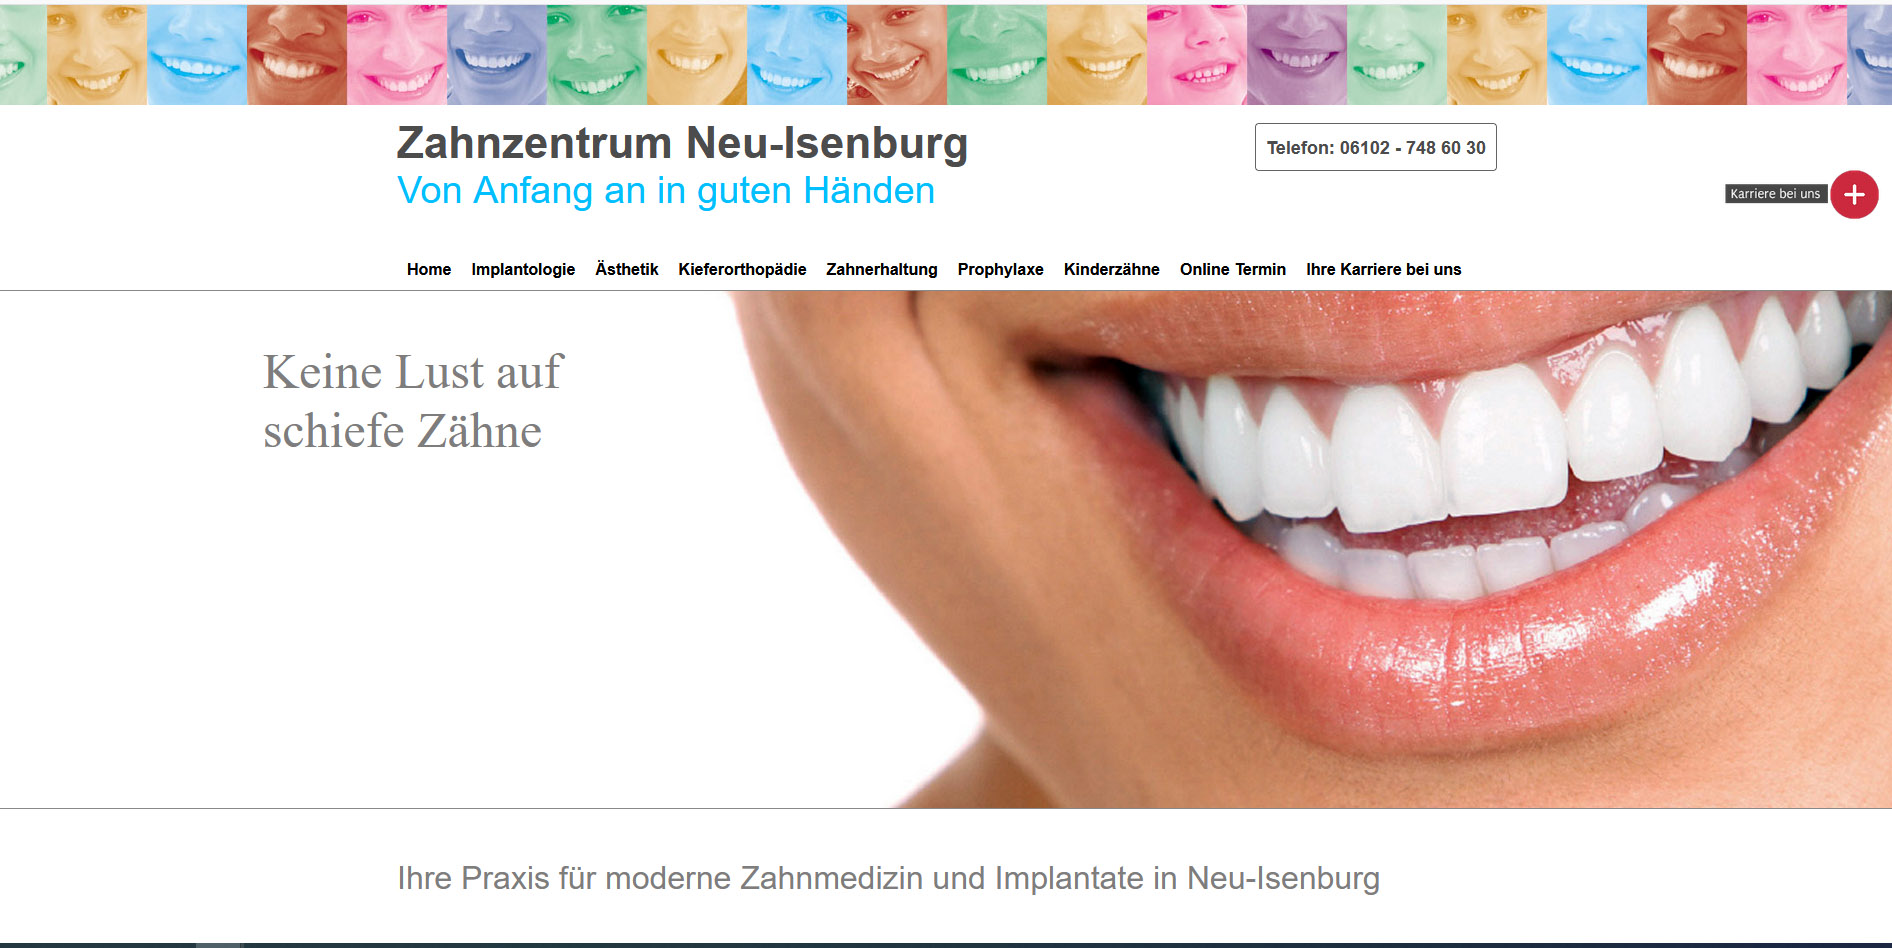 Zahnzentrum Neu-Isenburg